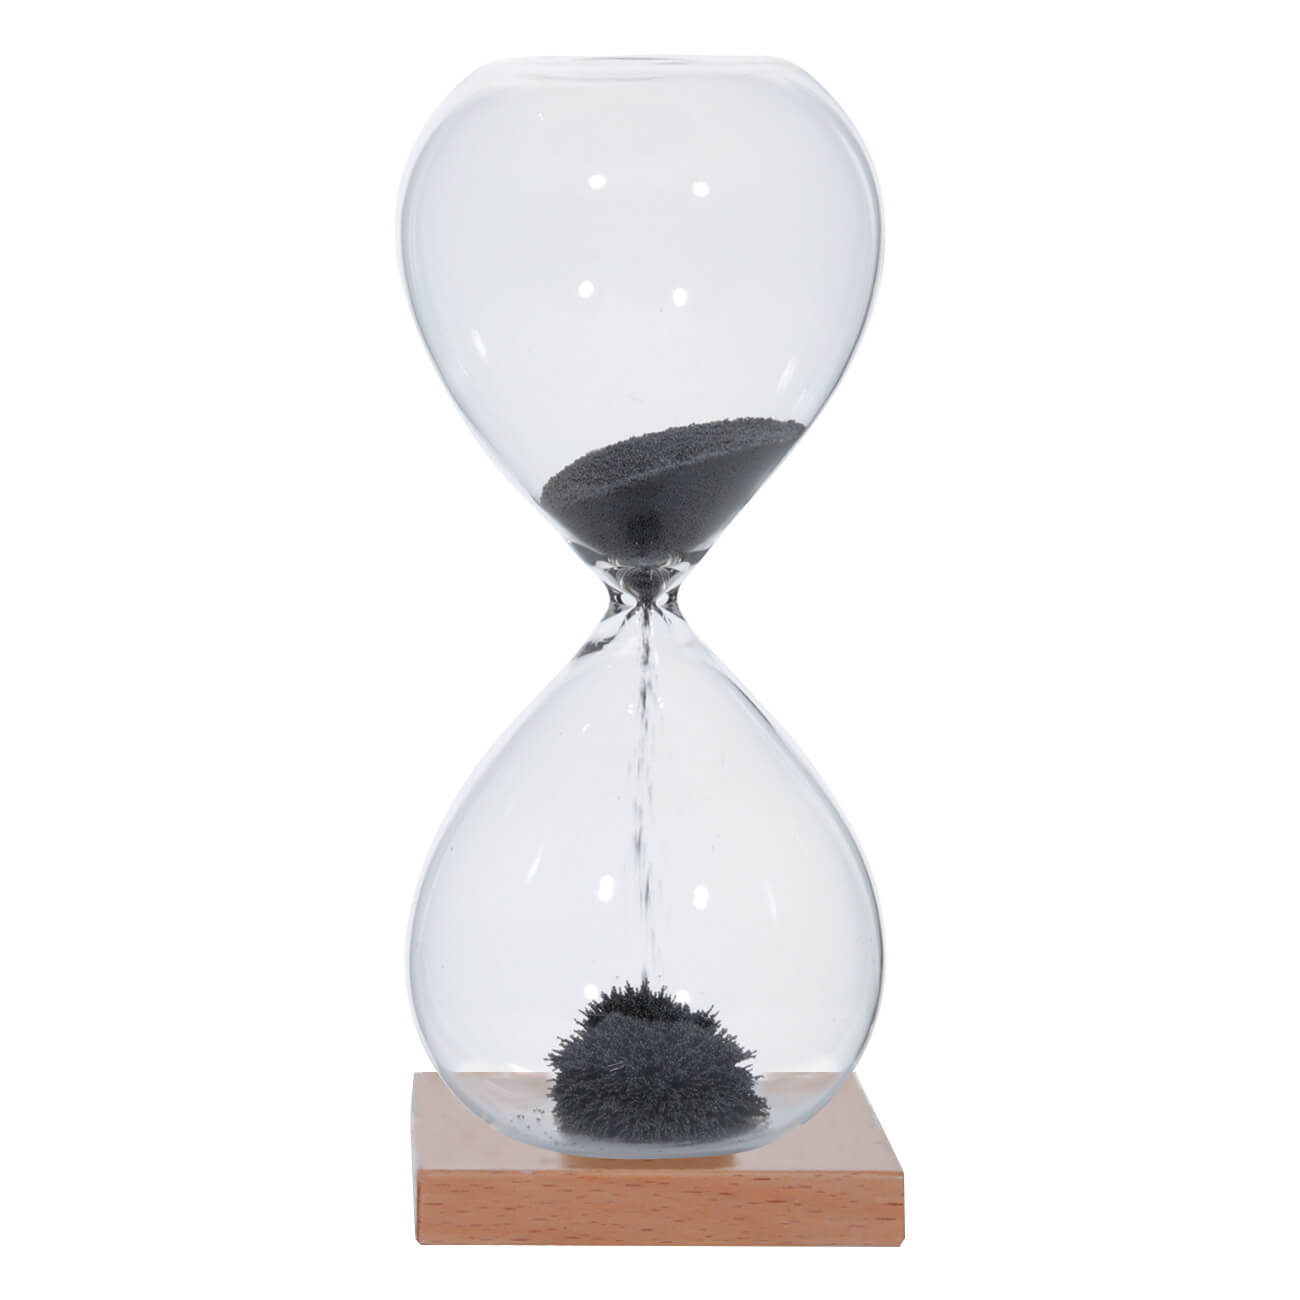 Kuchenland Часы песочные, 16 см, 1 минута, магнитные, на подставке, стекло/дерево, серые, Sand time